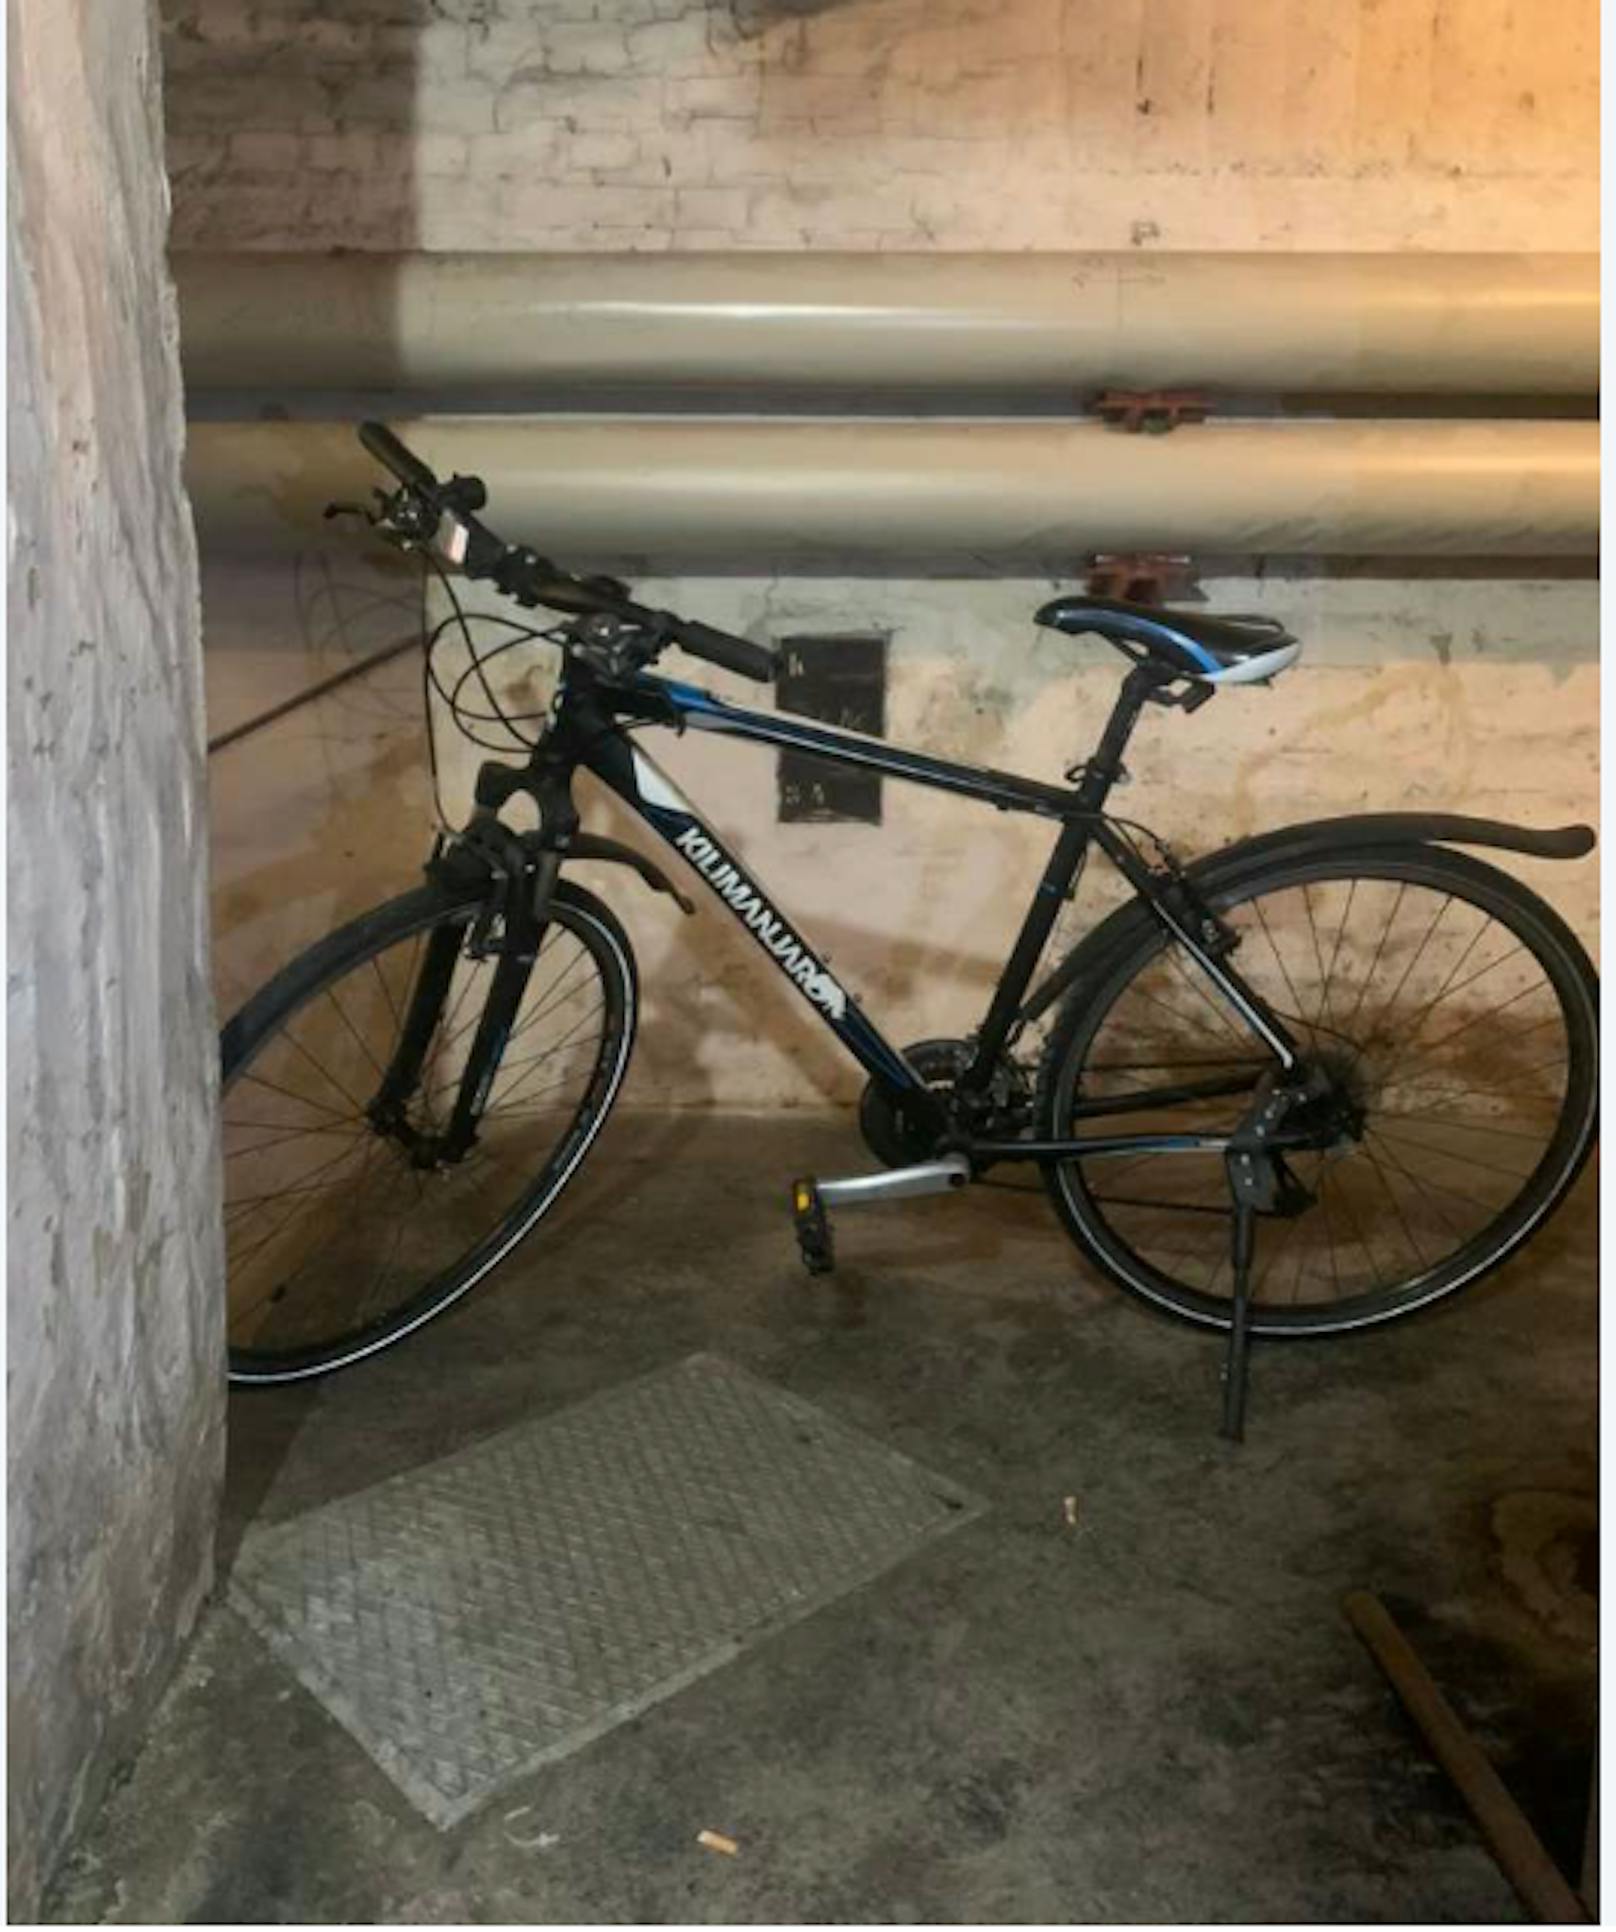 Ein 16-Jähriger steht im Verdacht, diese Fahrräder gestohlen zu haben. Rechtmäßige Besitzer sollen sich bei der Polizeiinspektion am Praterstern melden.